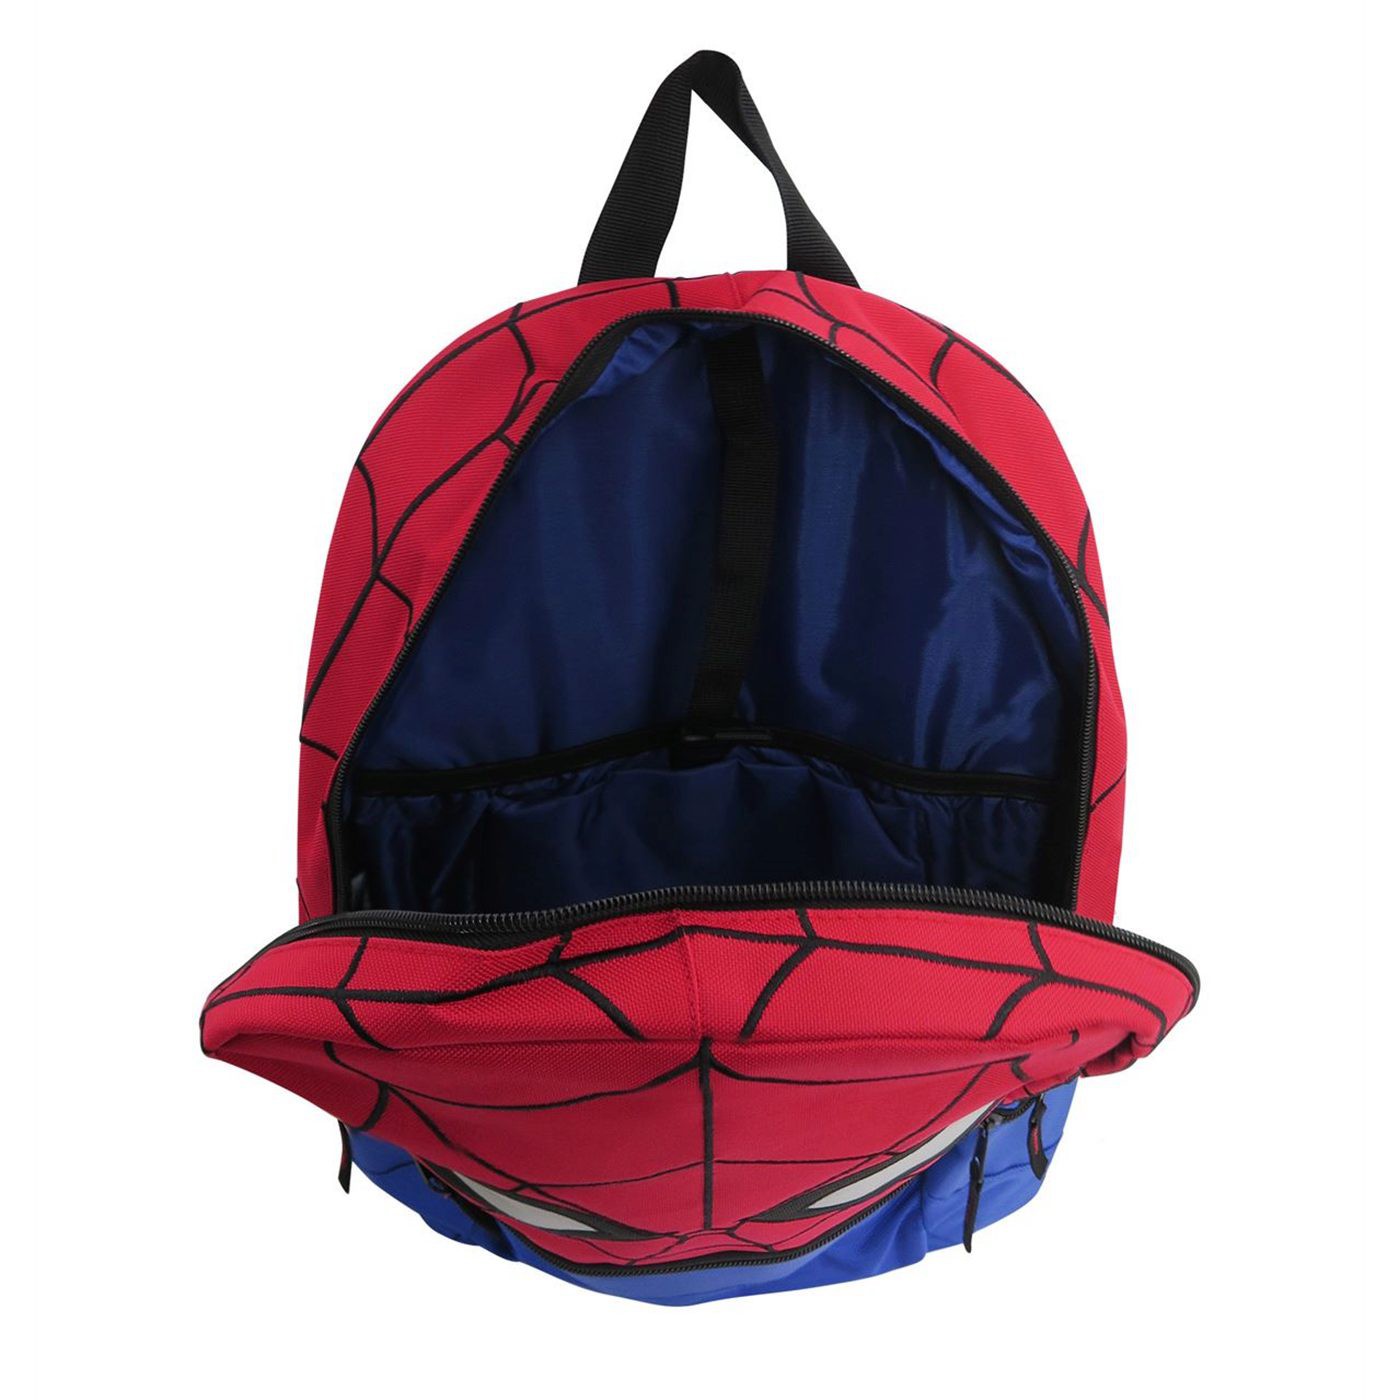 Spider-Man Big Face Laptop Backpack